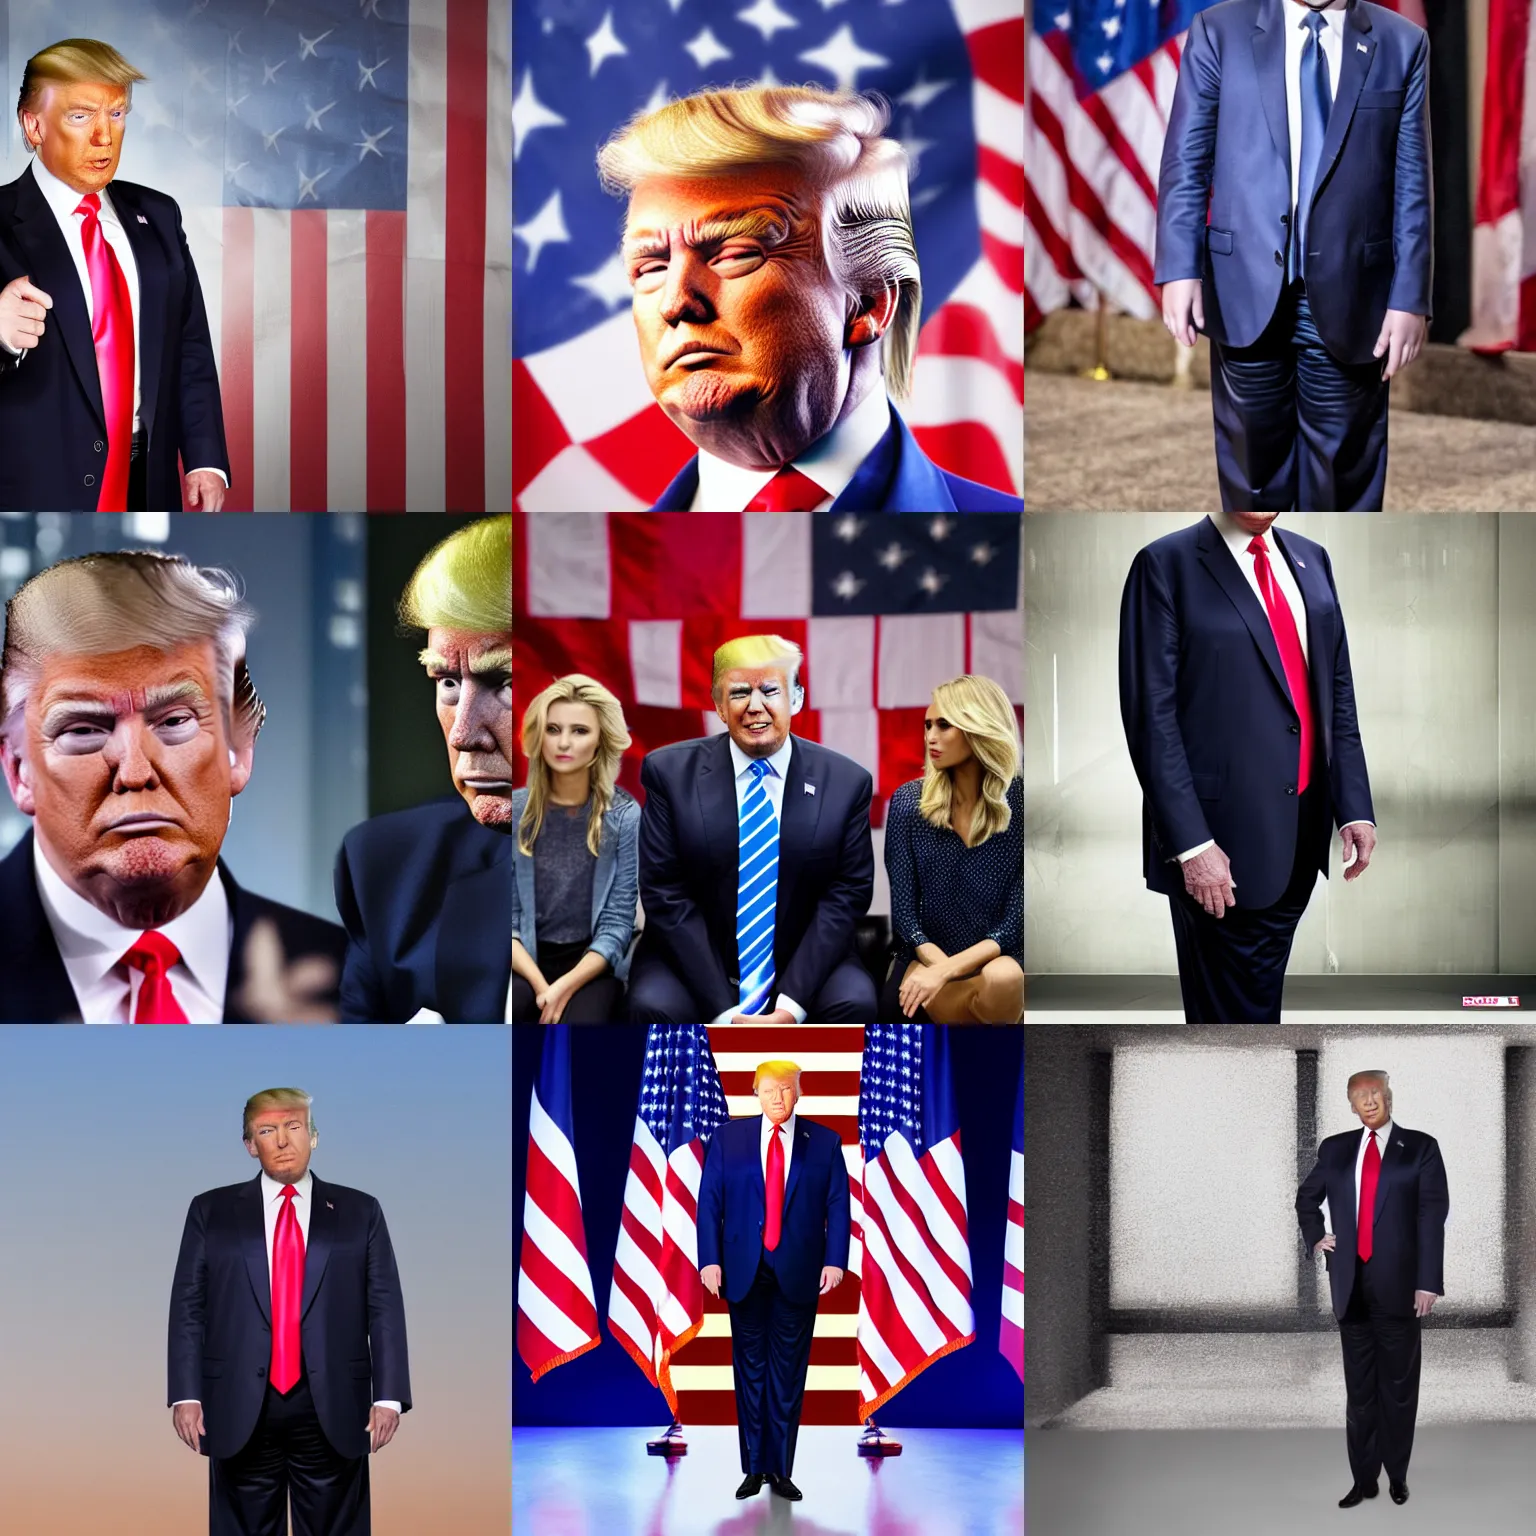 Prompt: Donald Trump as JR in Dallas, 4k studio photo